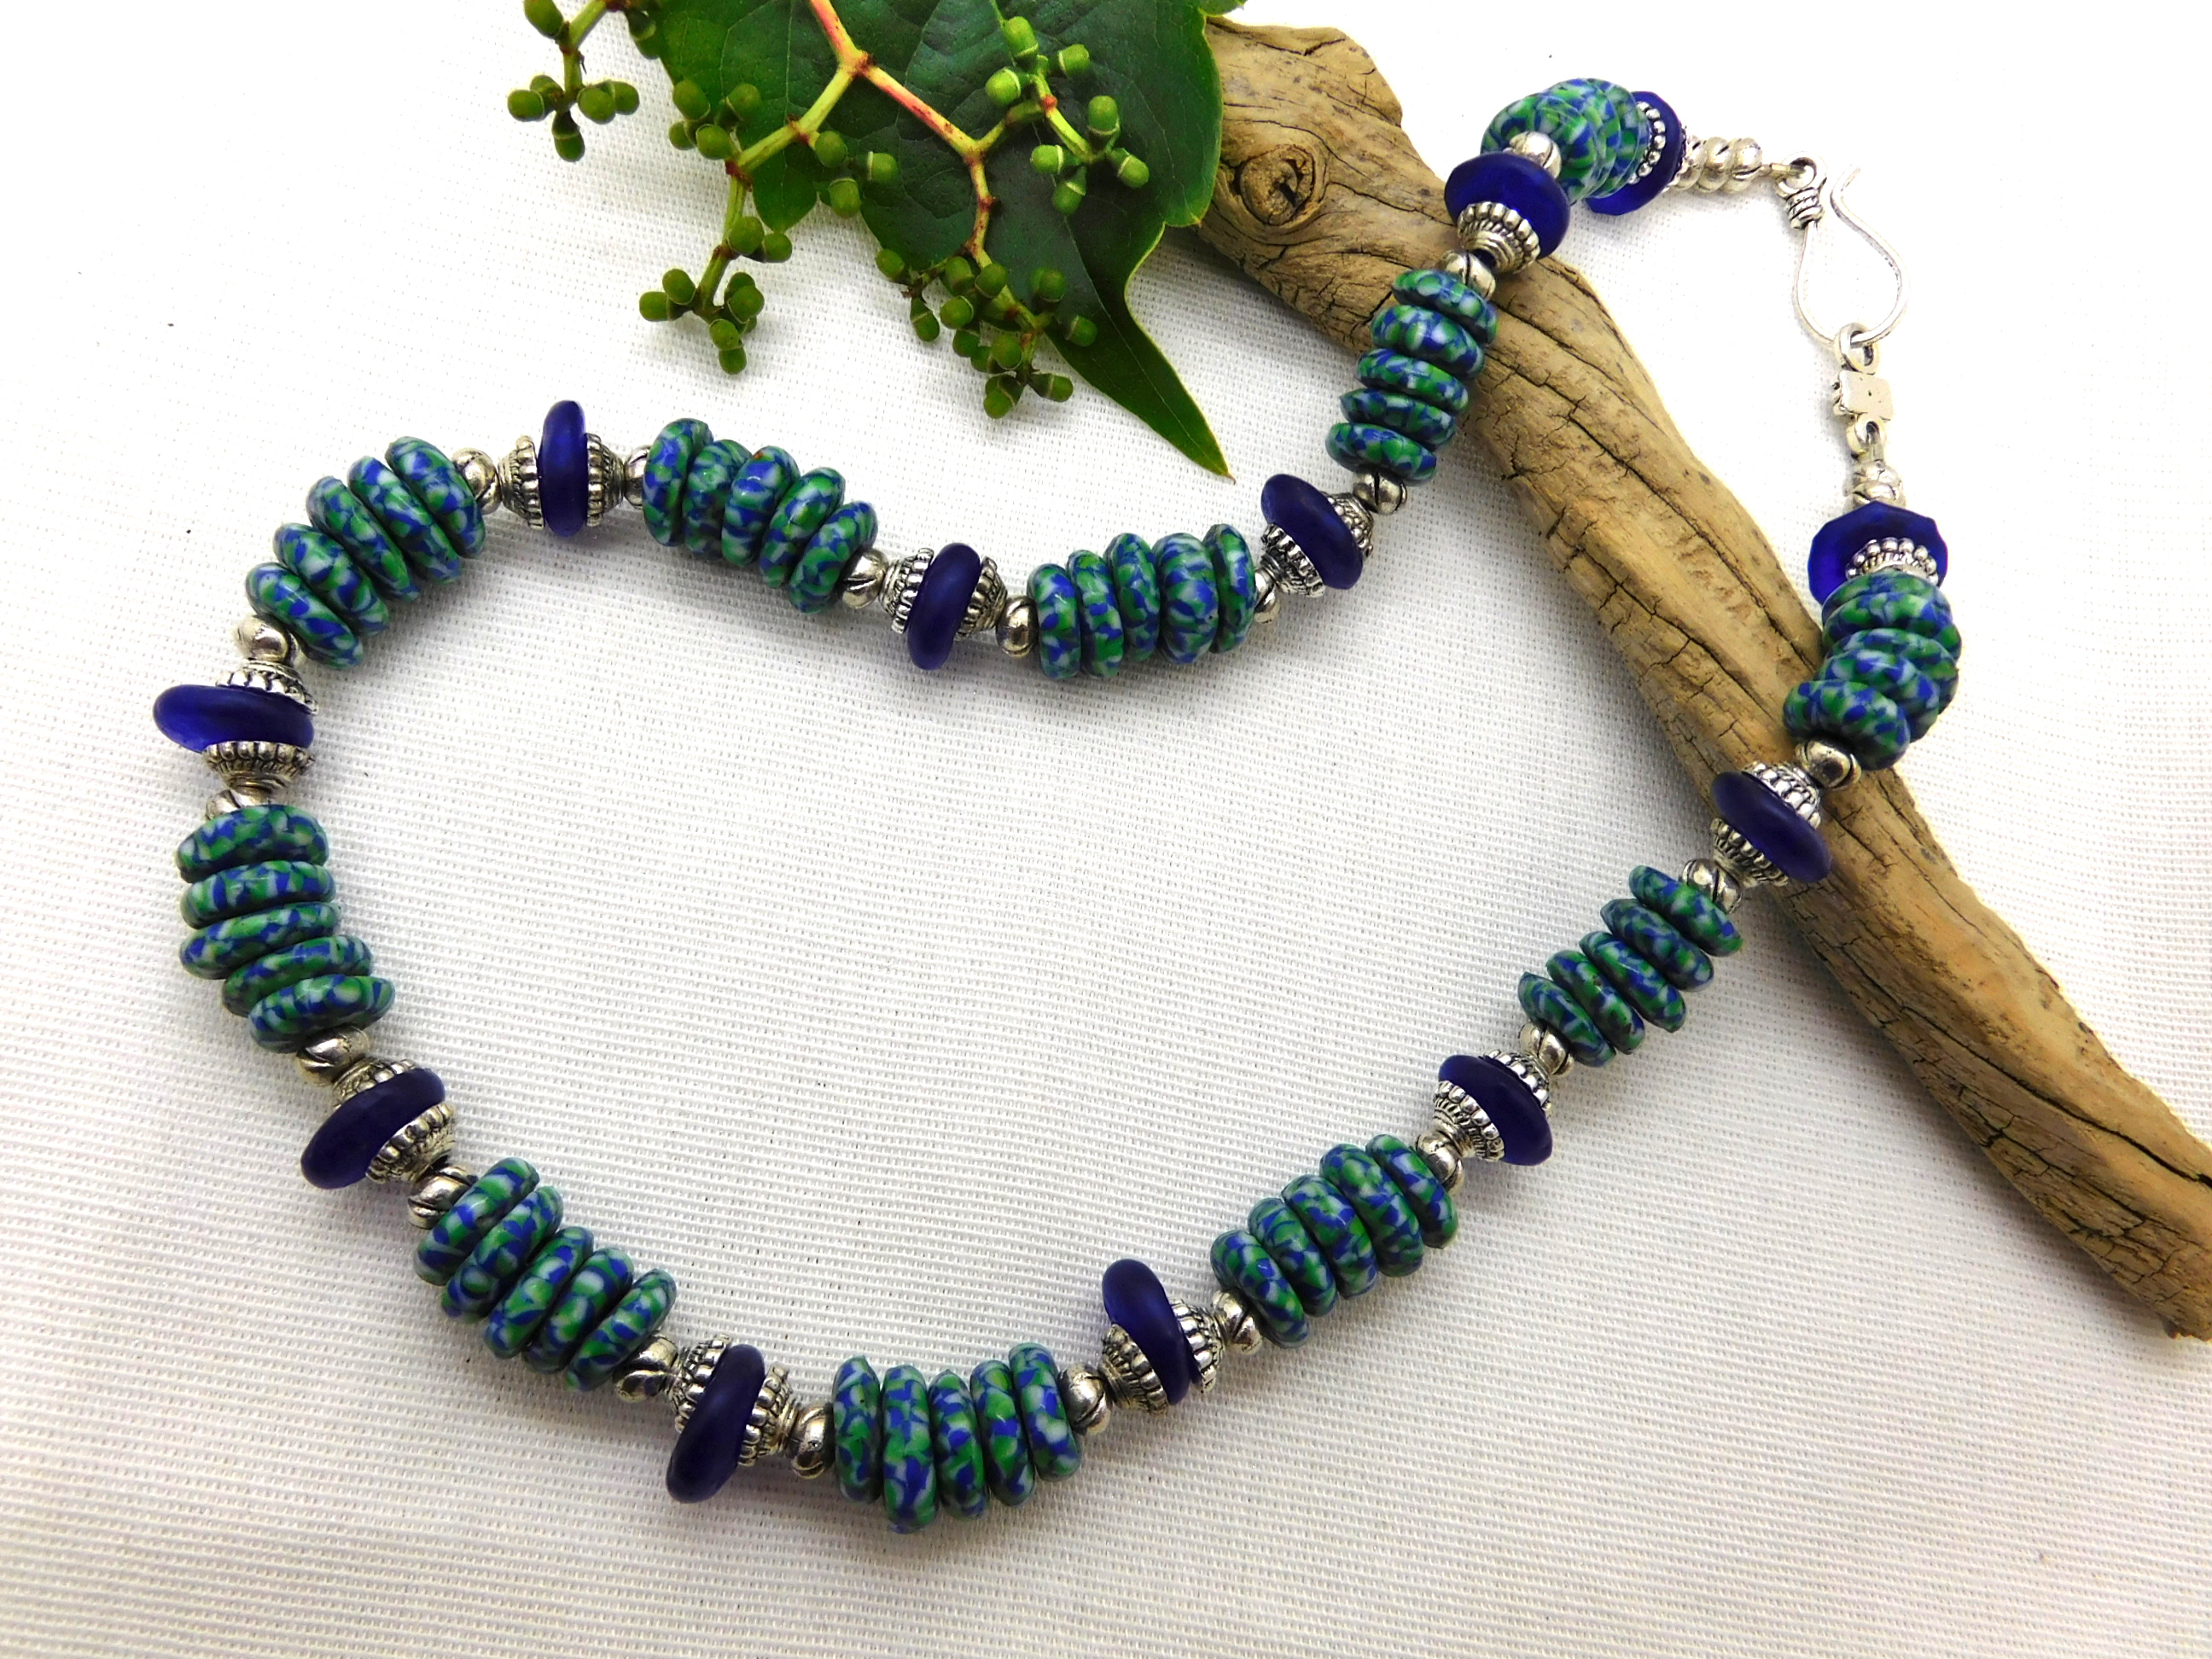 Halskette - afrikanische Krobo-Glas-Rondelle - blau, grün, silber